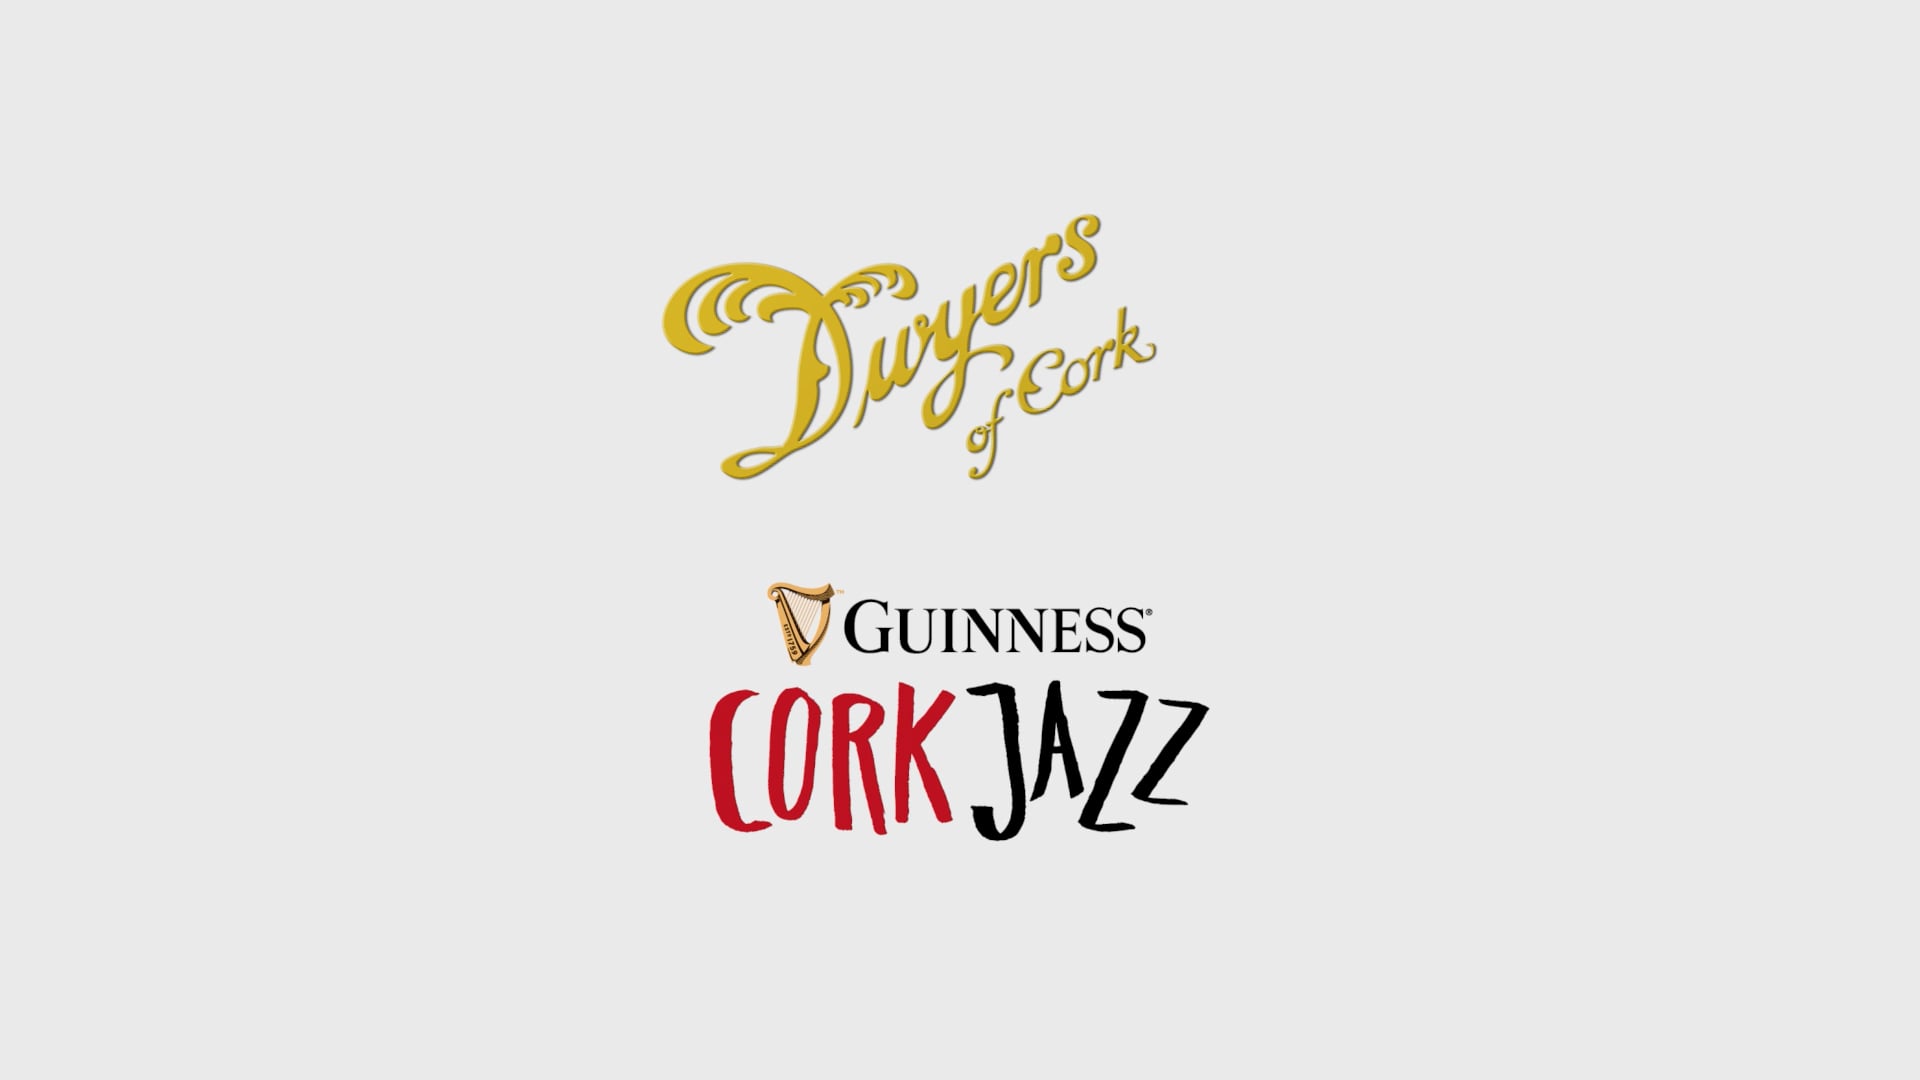 Dwyers of Cork Jazz Weekend